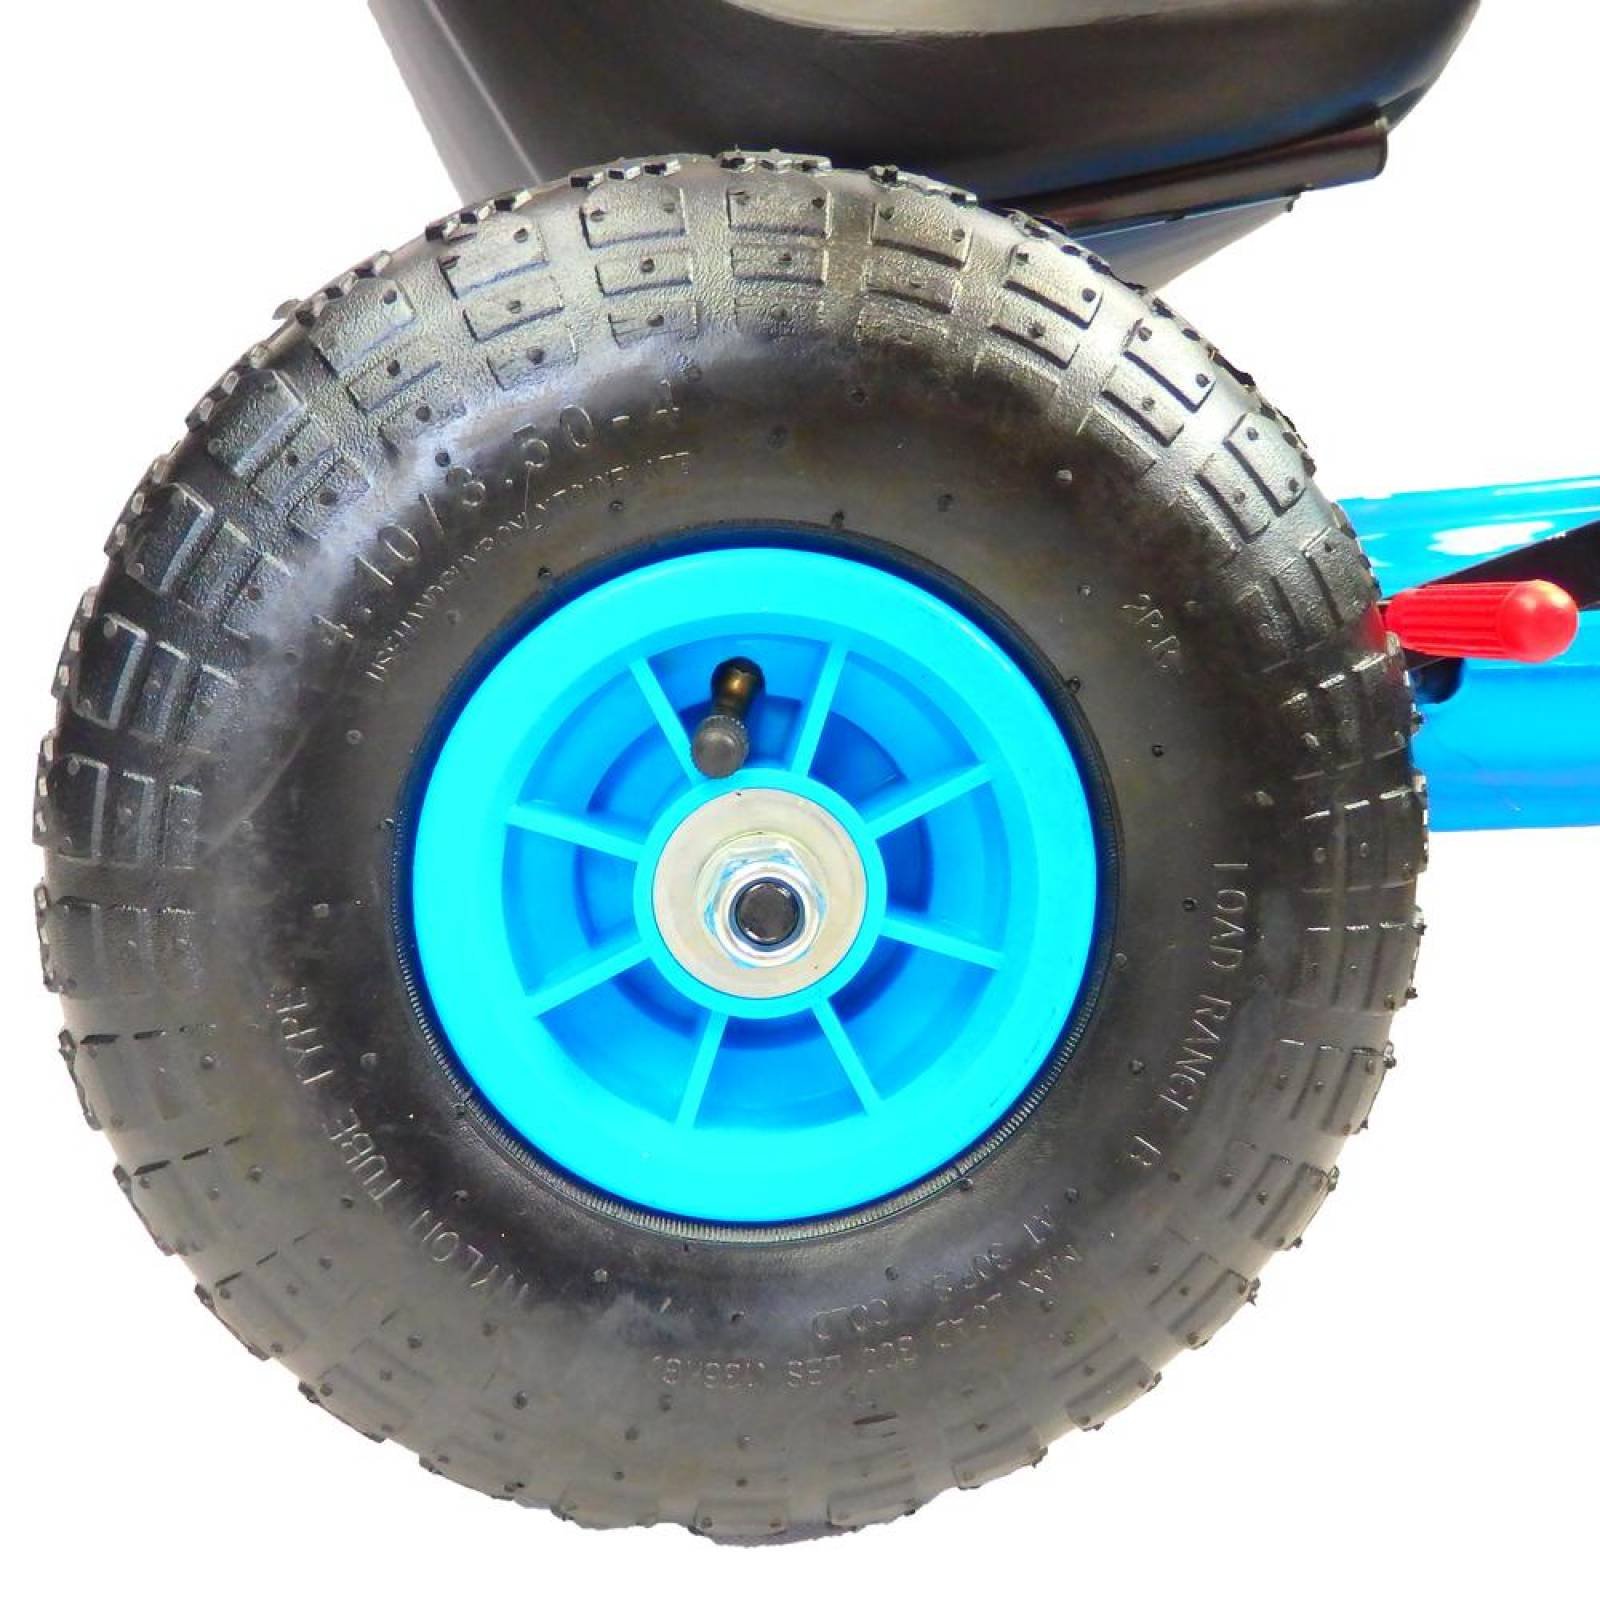 Go kart para niños con pedales y llantas de aire Tek Azul 